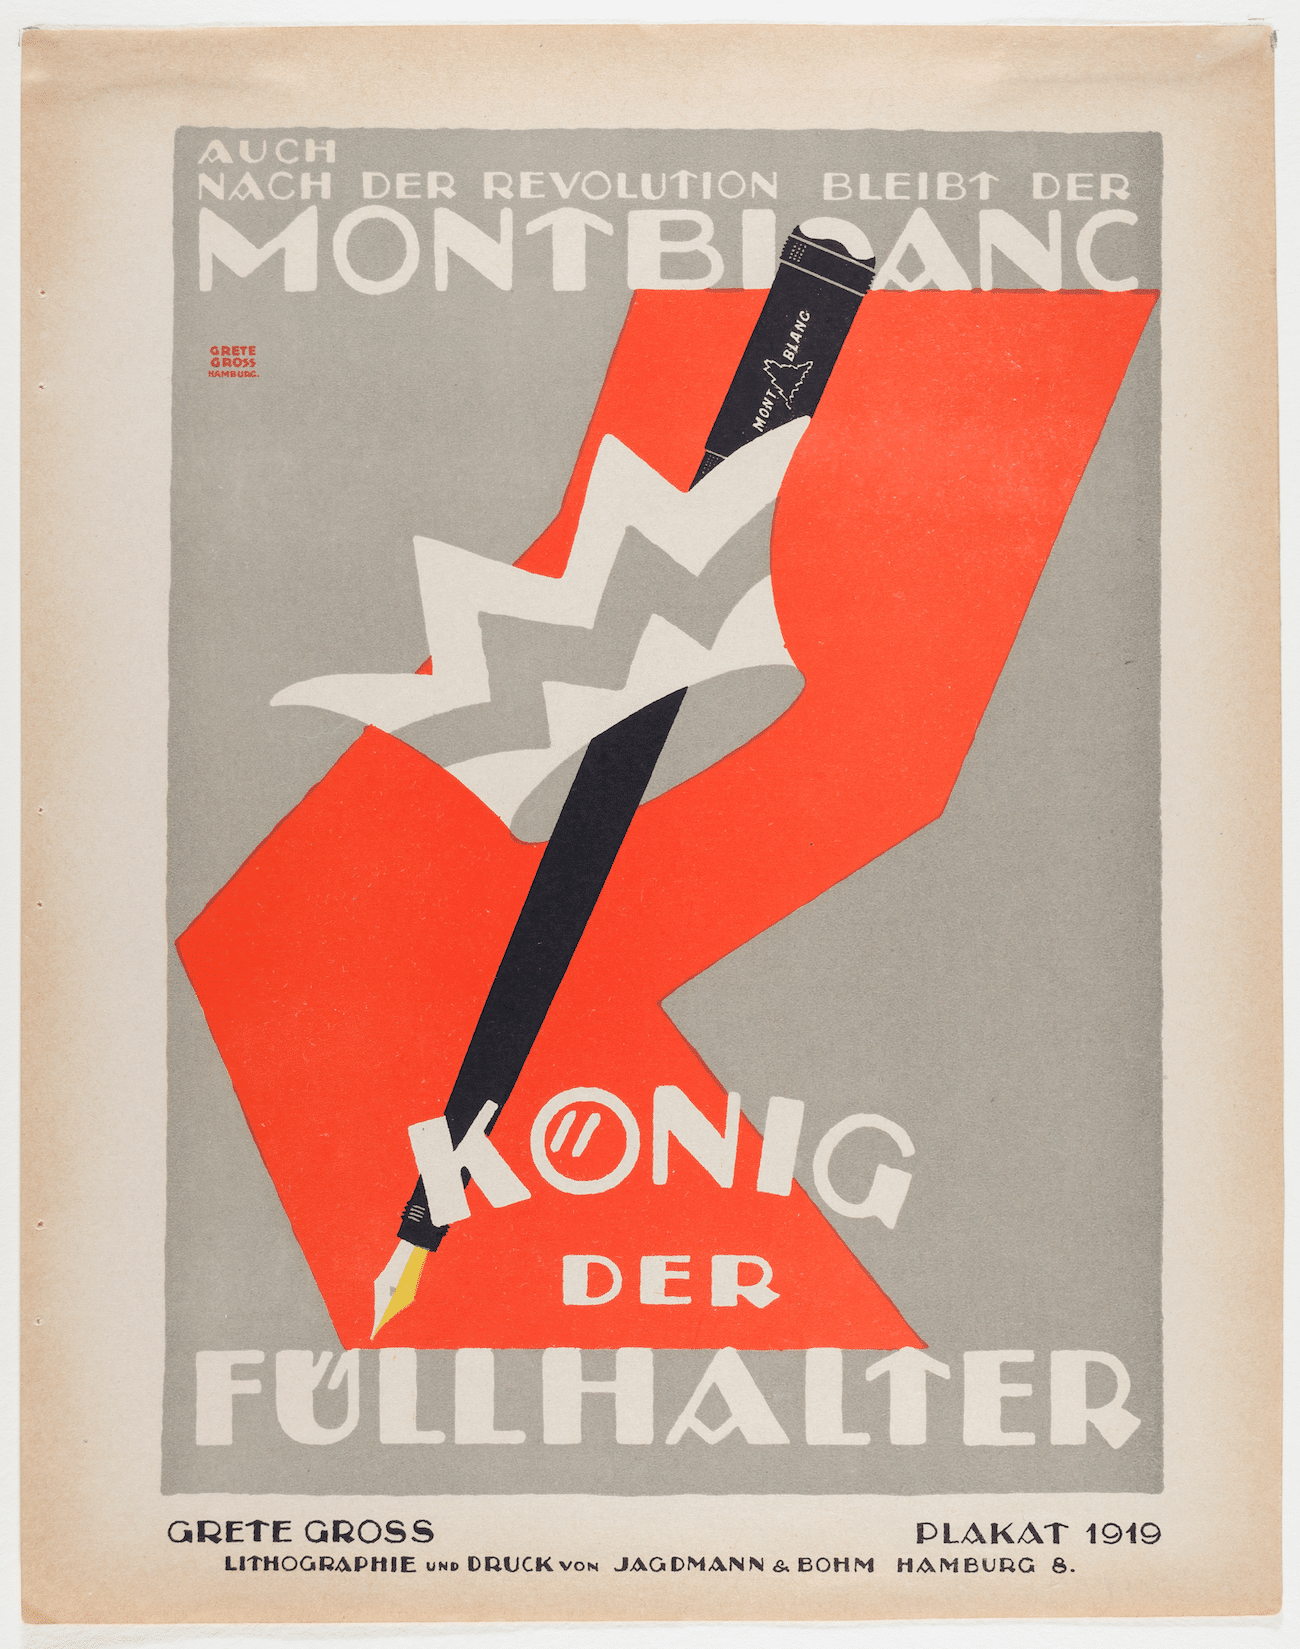 Montblanc-Füller-Werbung, Plakatdesign von Grete Gross